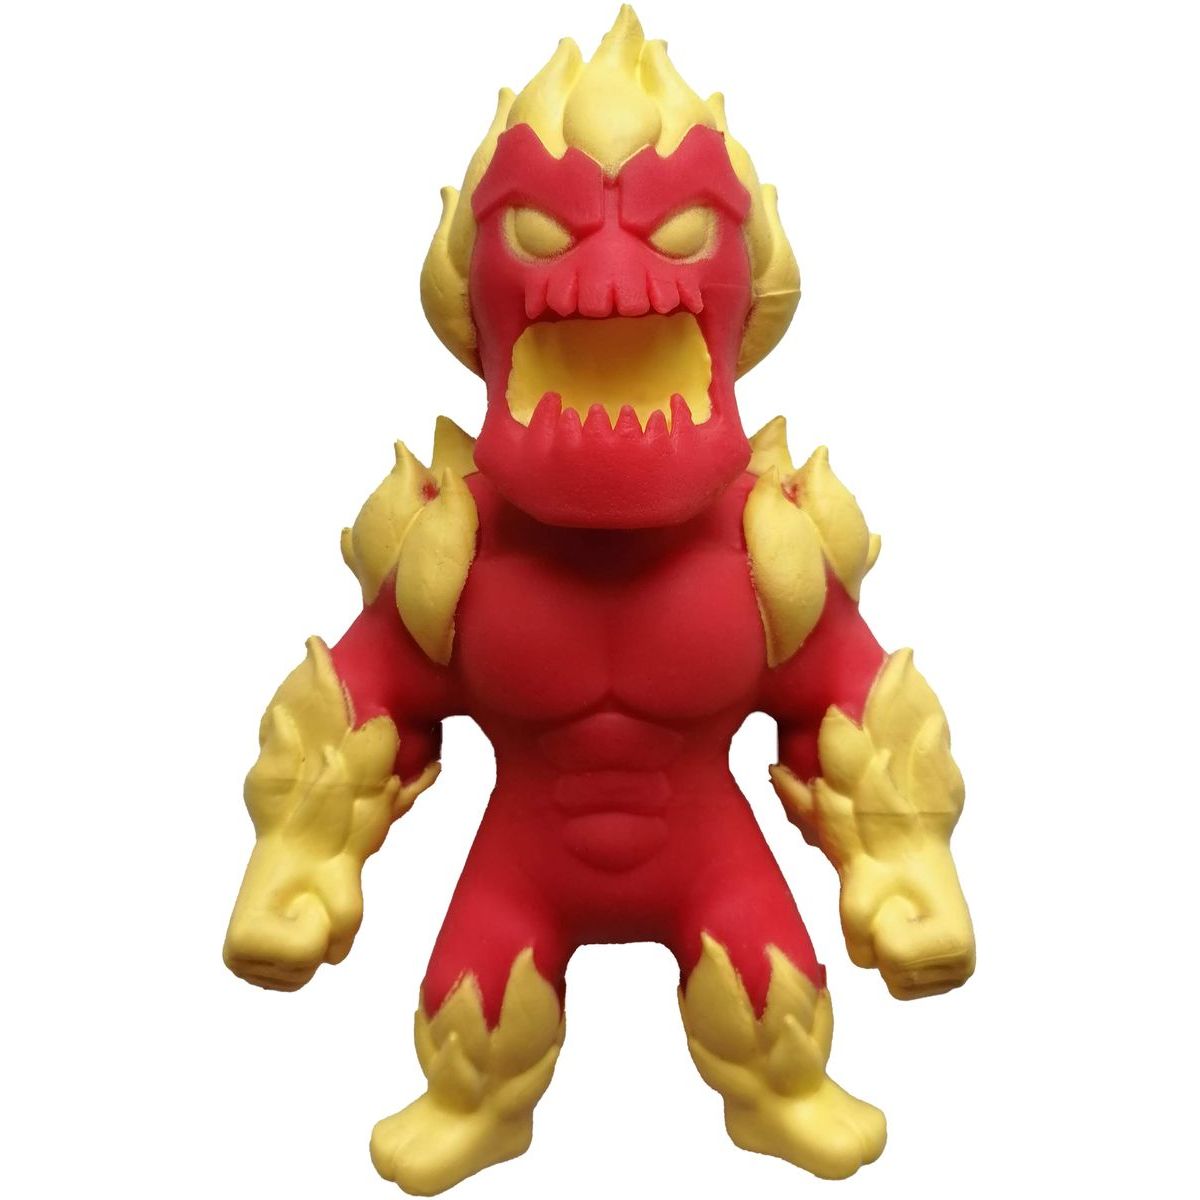 Flexi Monster figurka 4. série Fire Monster